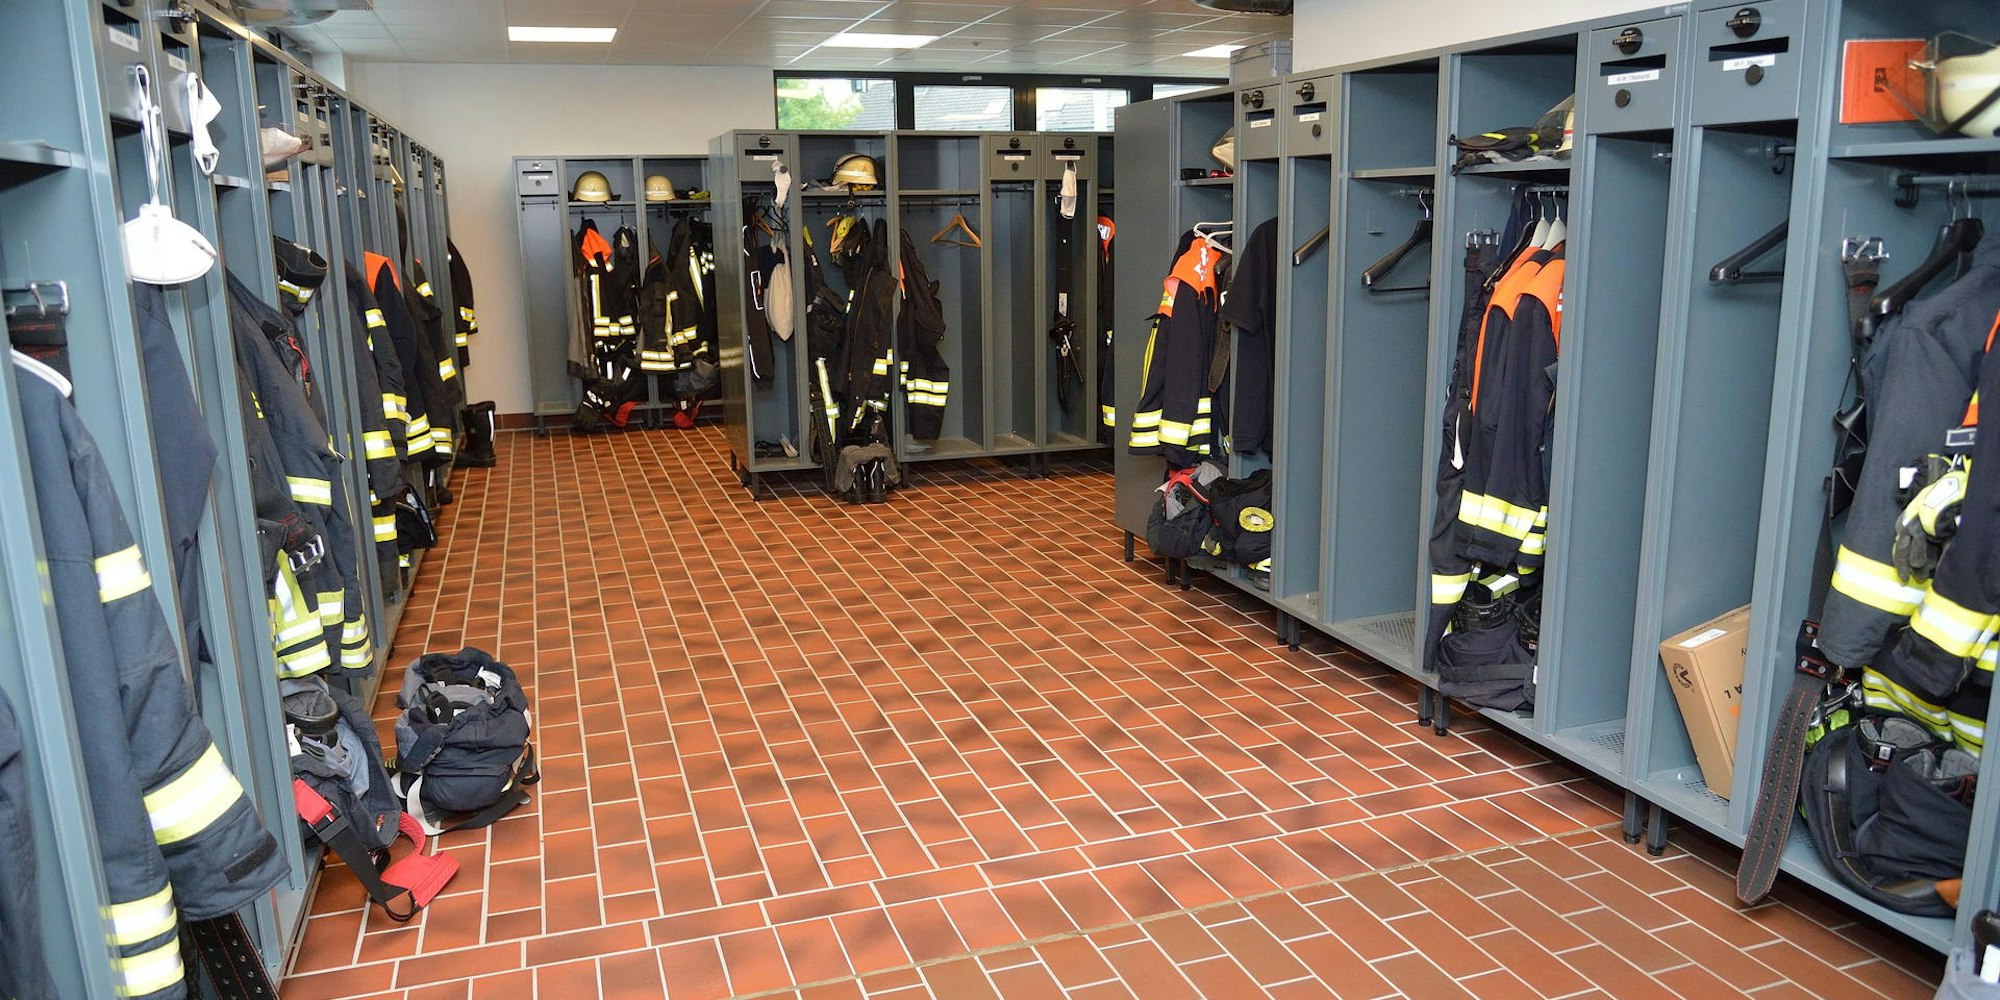 Im August 2020 wurde nach umfangreichen Umbauten und Erweiterungen das neue Feuerwehraushaus übergeben.